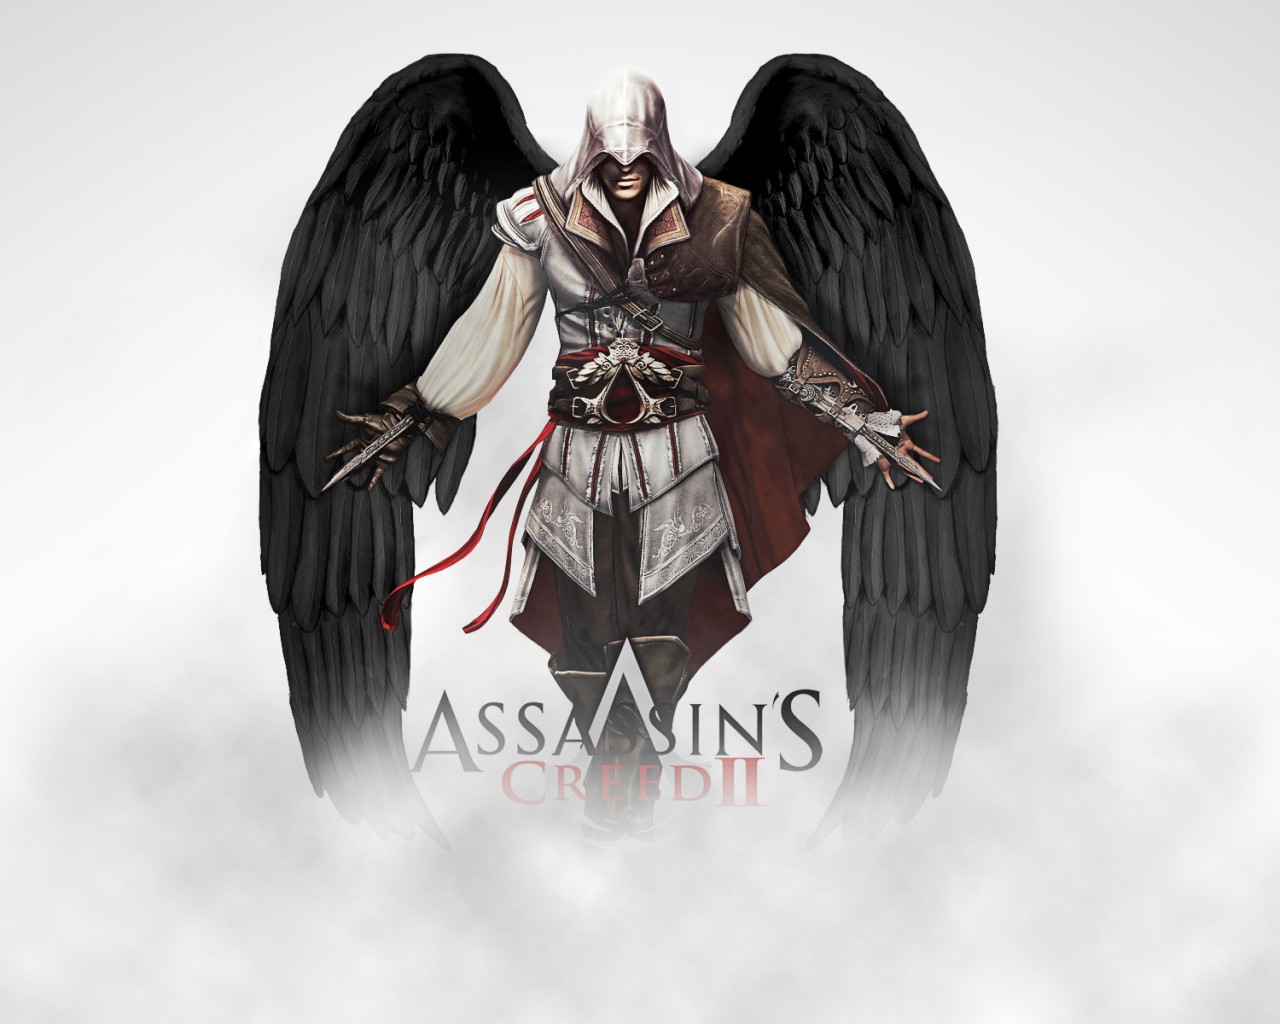 Ezio Auditore da Firenze, Assassins Creed, Video games, Artwork, Assassins Creed 2 Wallpaper